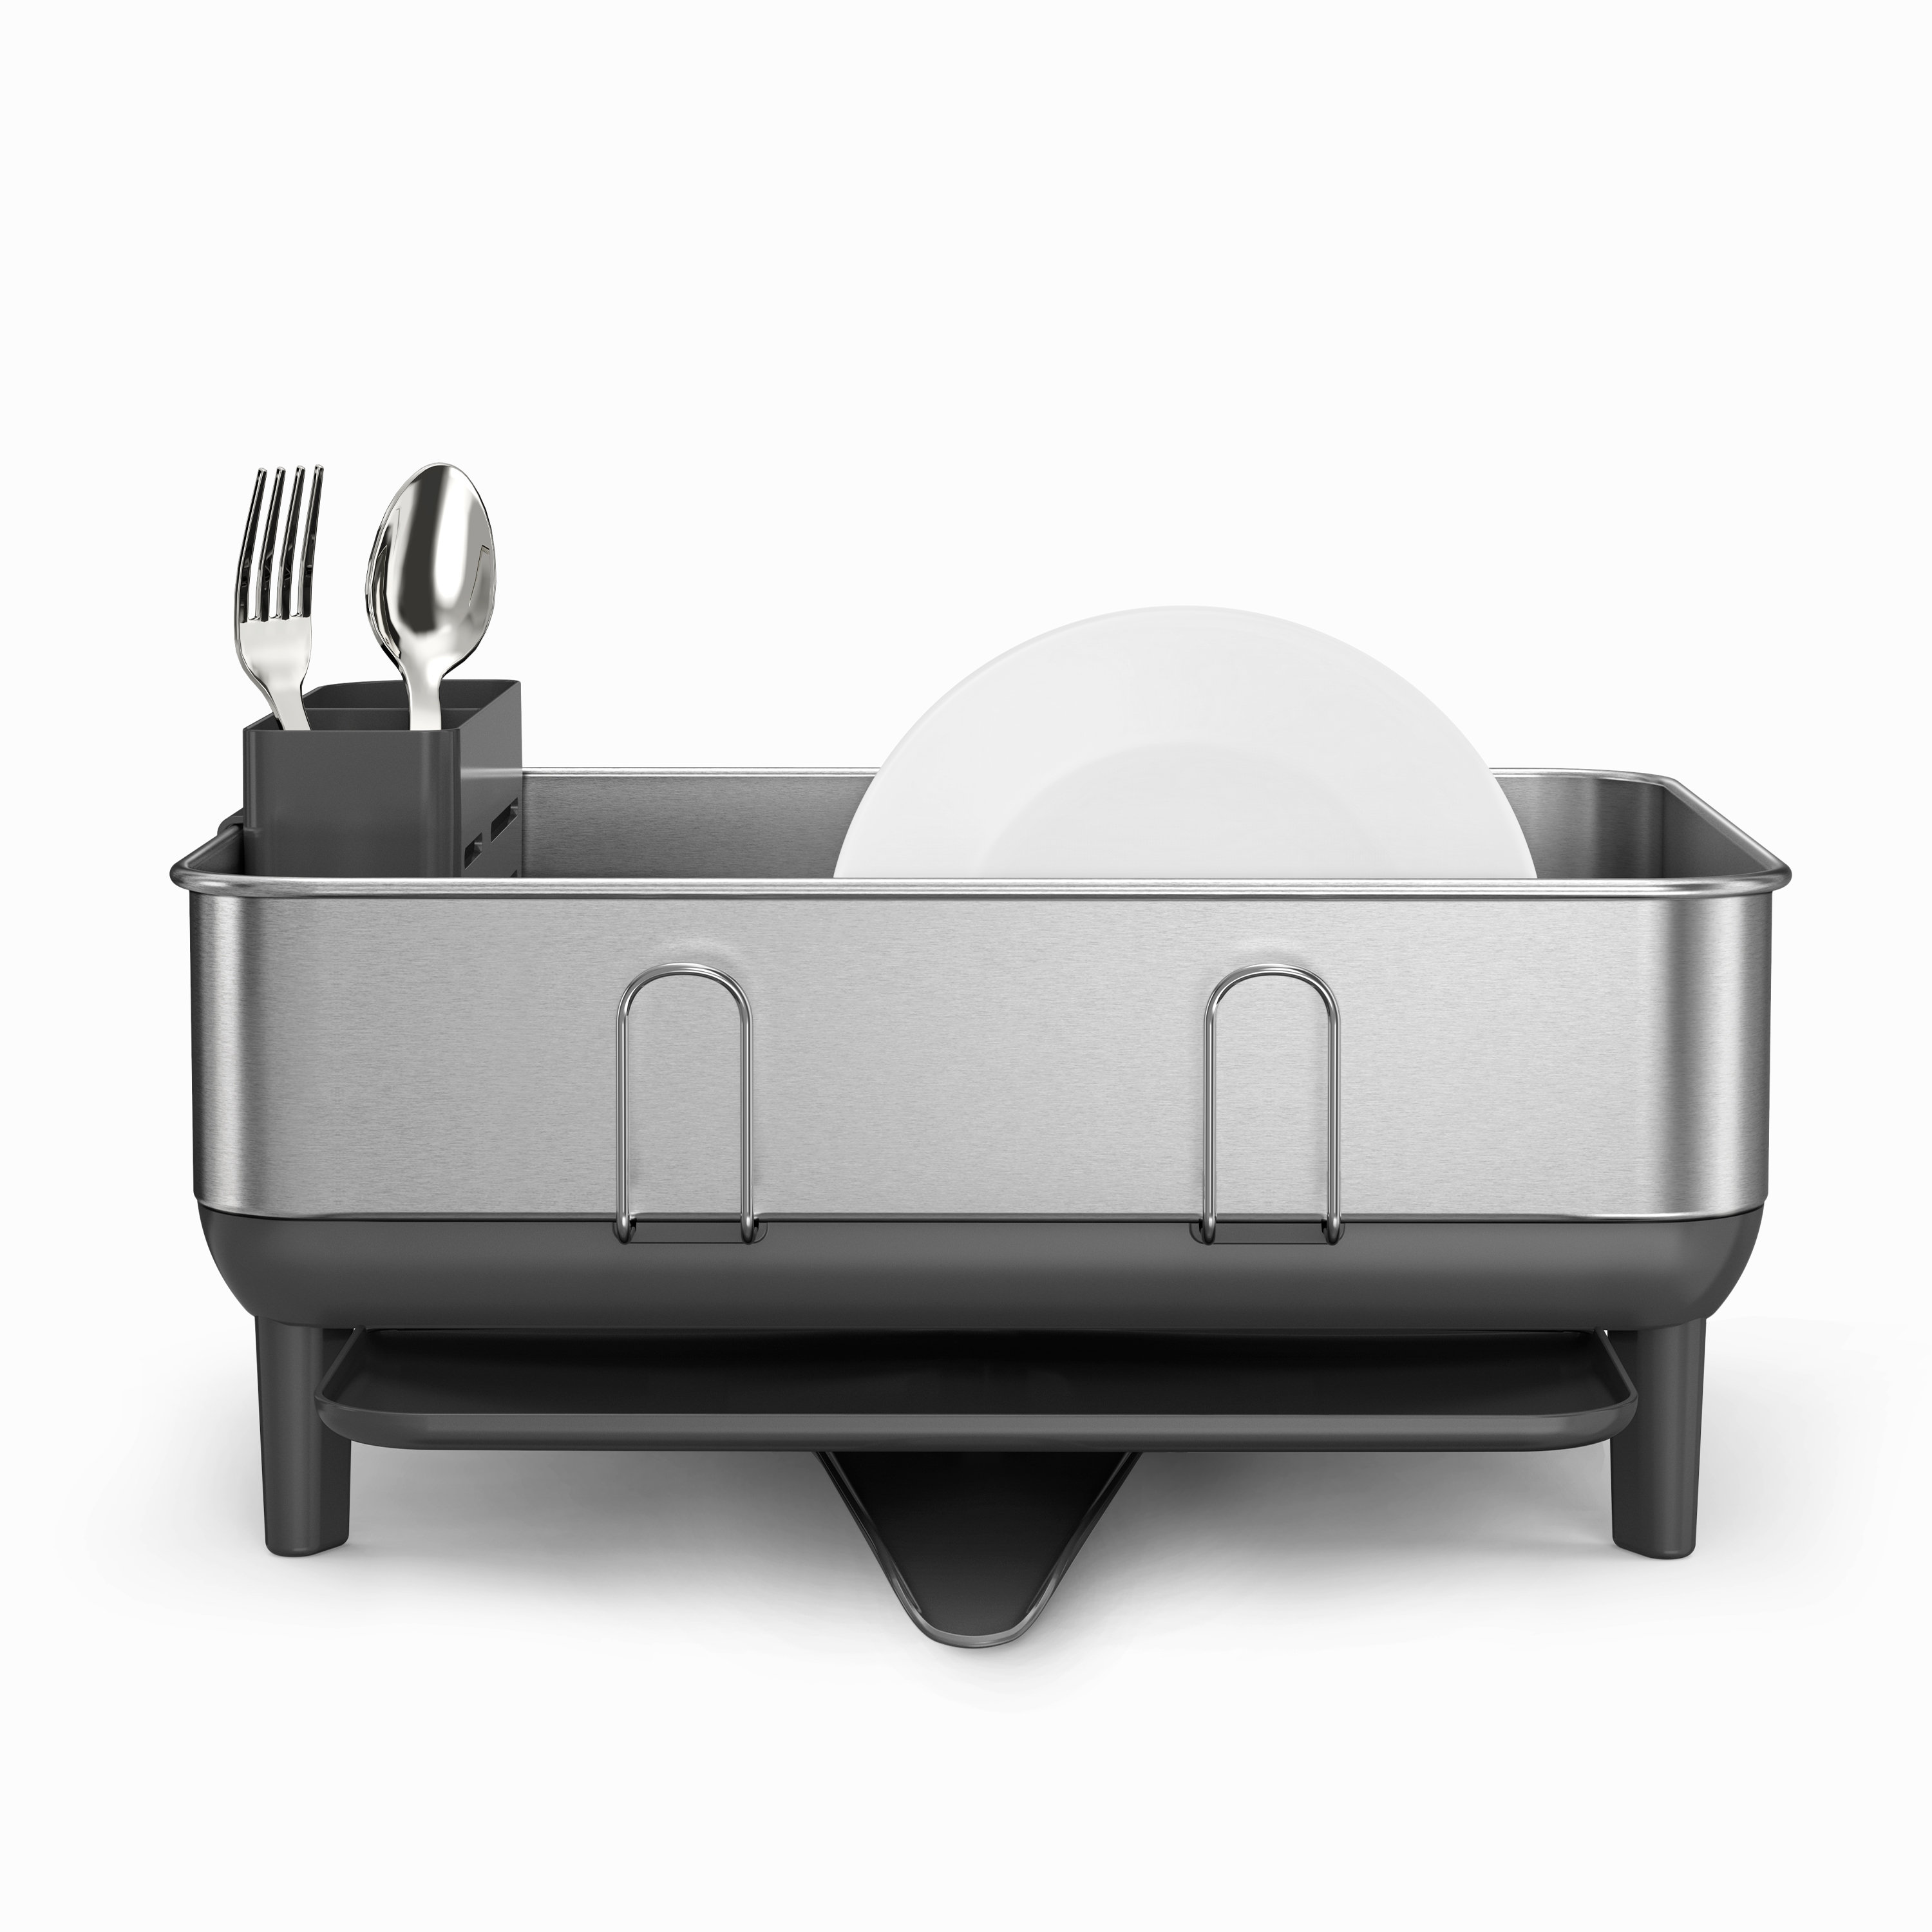 Brabantia Light Grey Compact Dish Drying Rack + Reviews